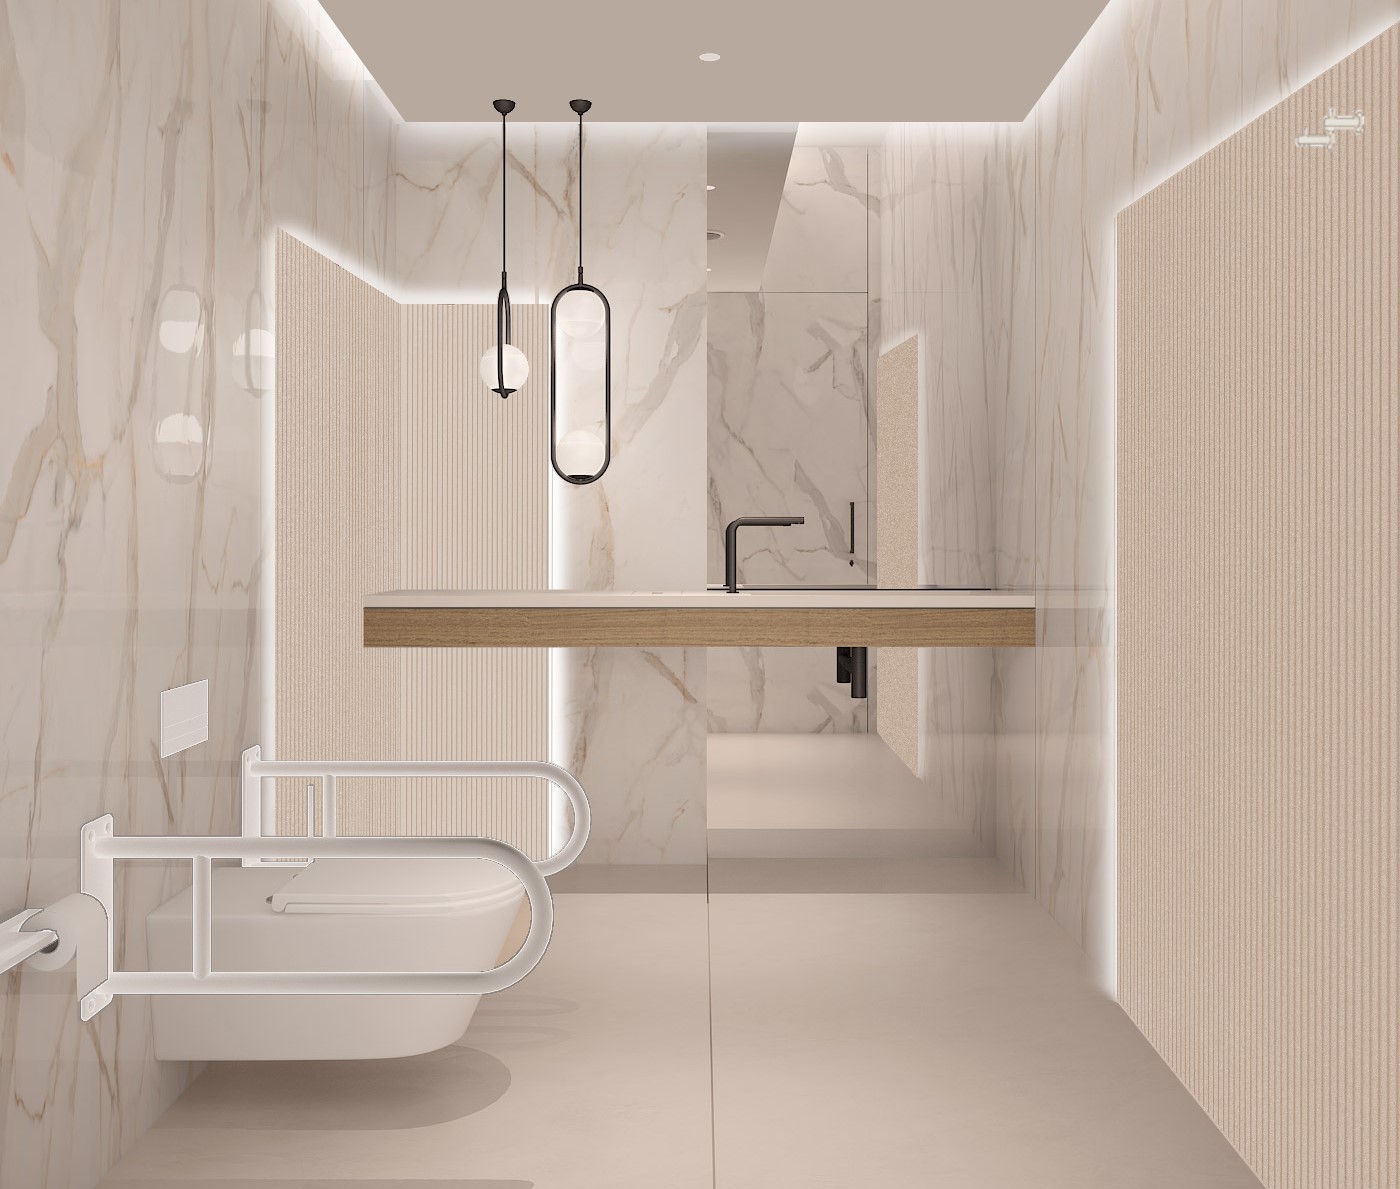 Image of INT 09 Bathroom M retocado in Bilbao - Cosentino